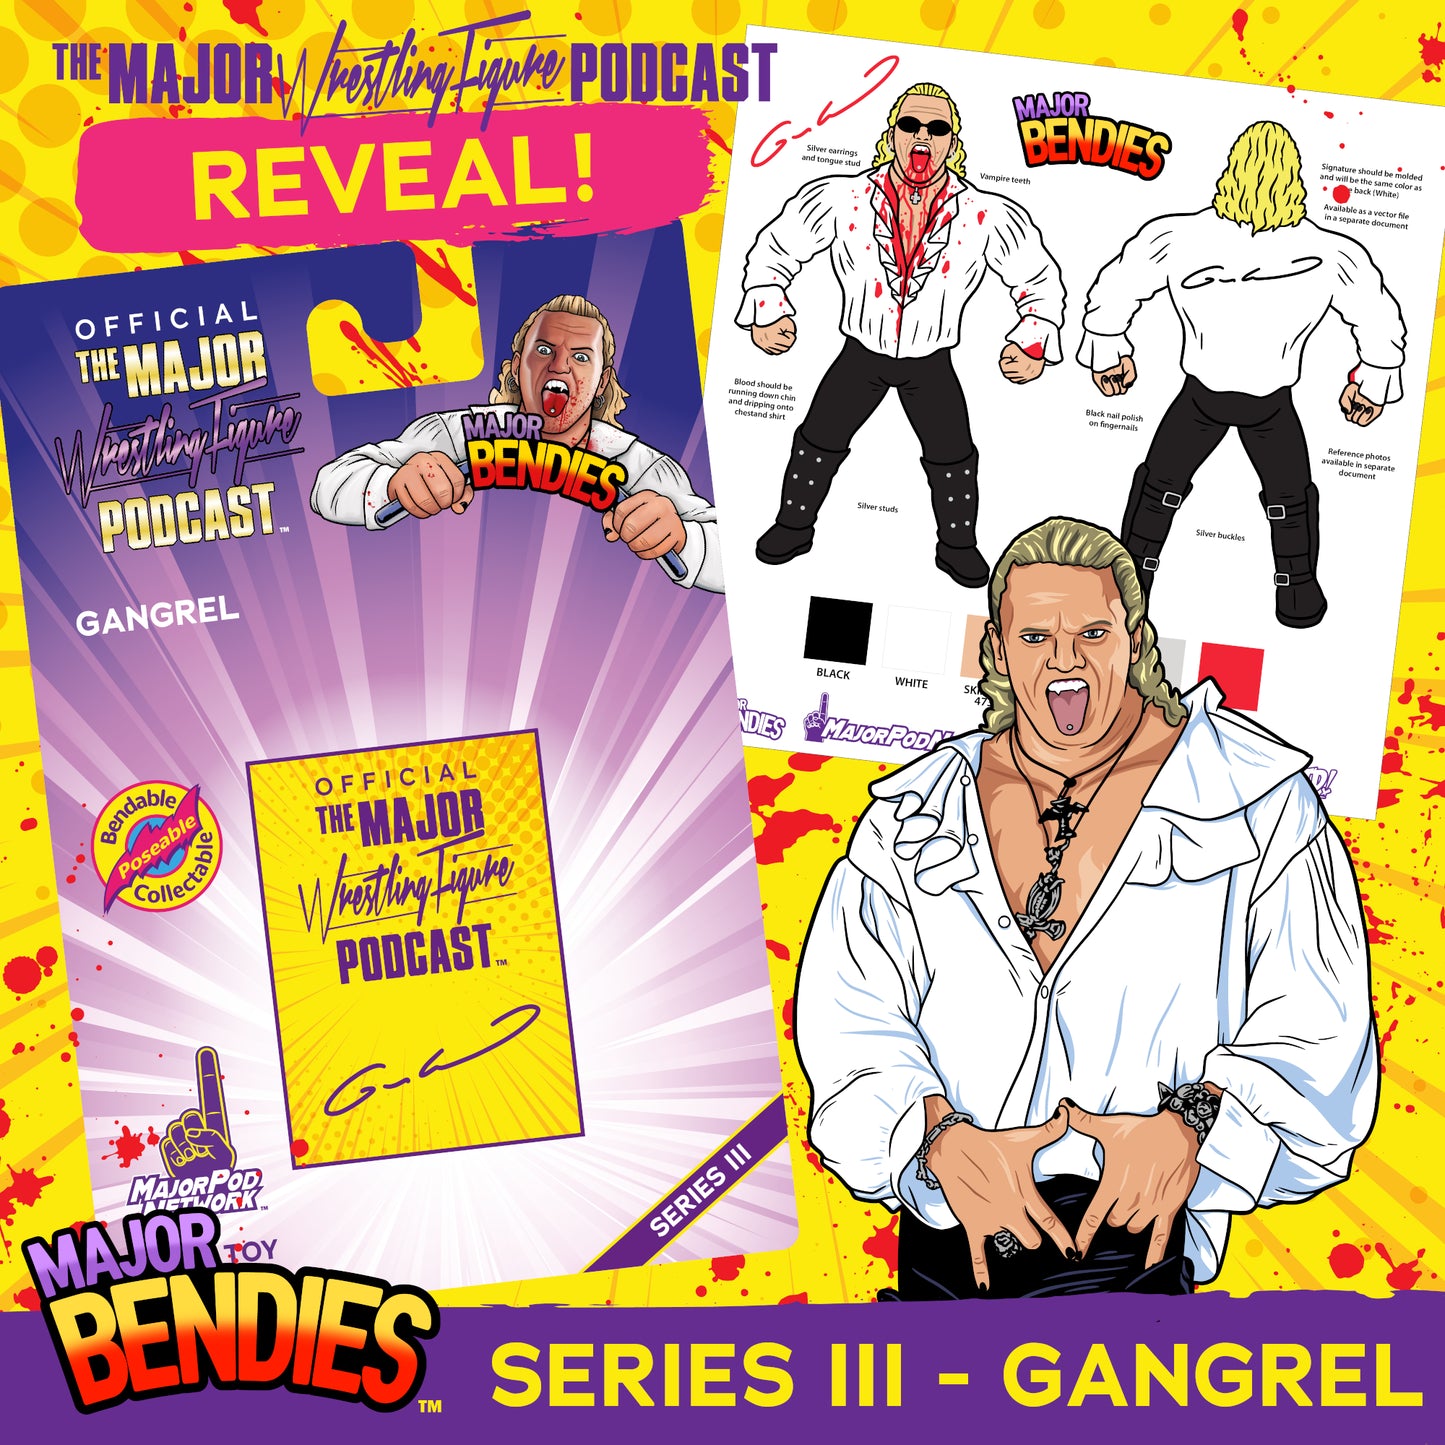 2023 Major Wrestling Figure Podcast Major Bendies Series 3 Gangrel [Major Chase]